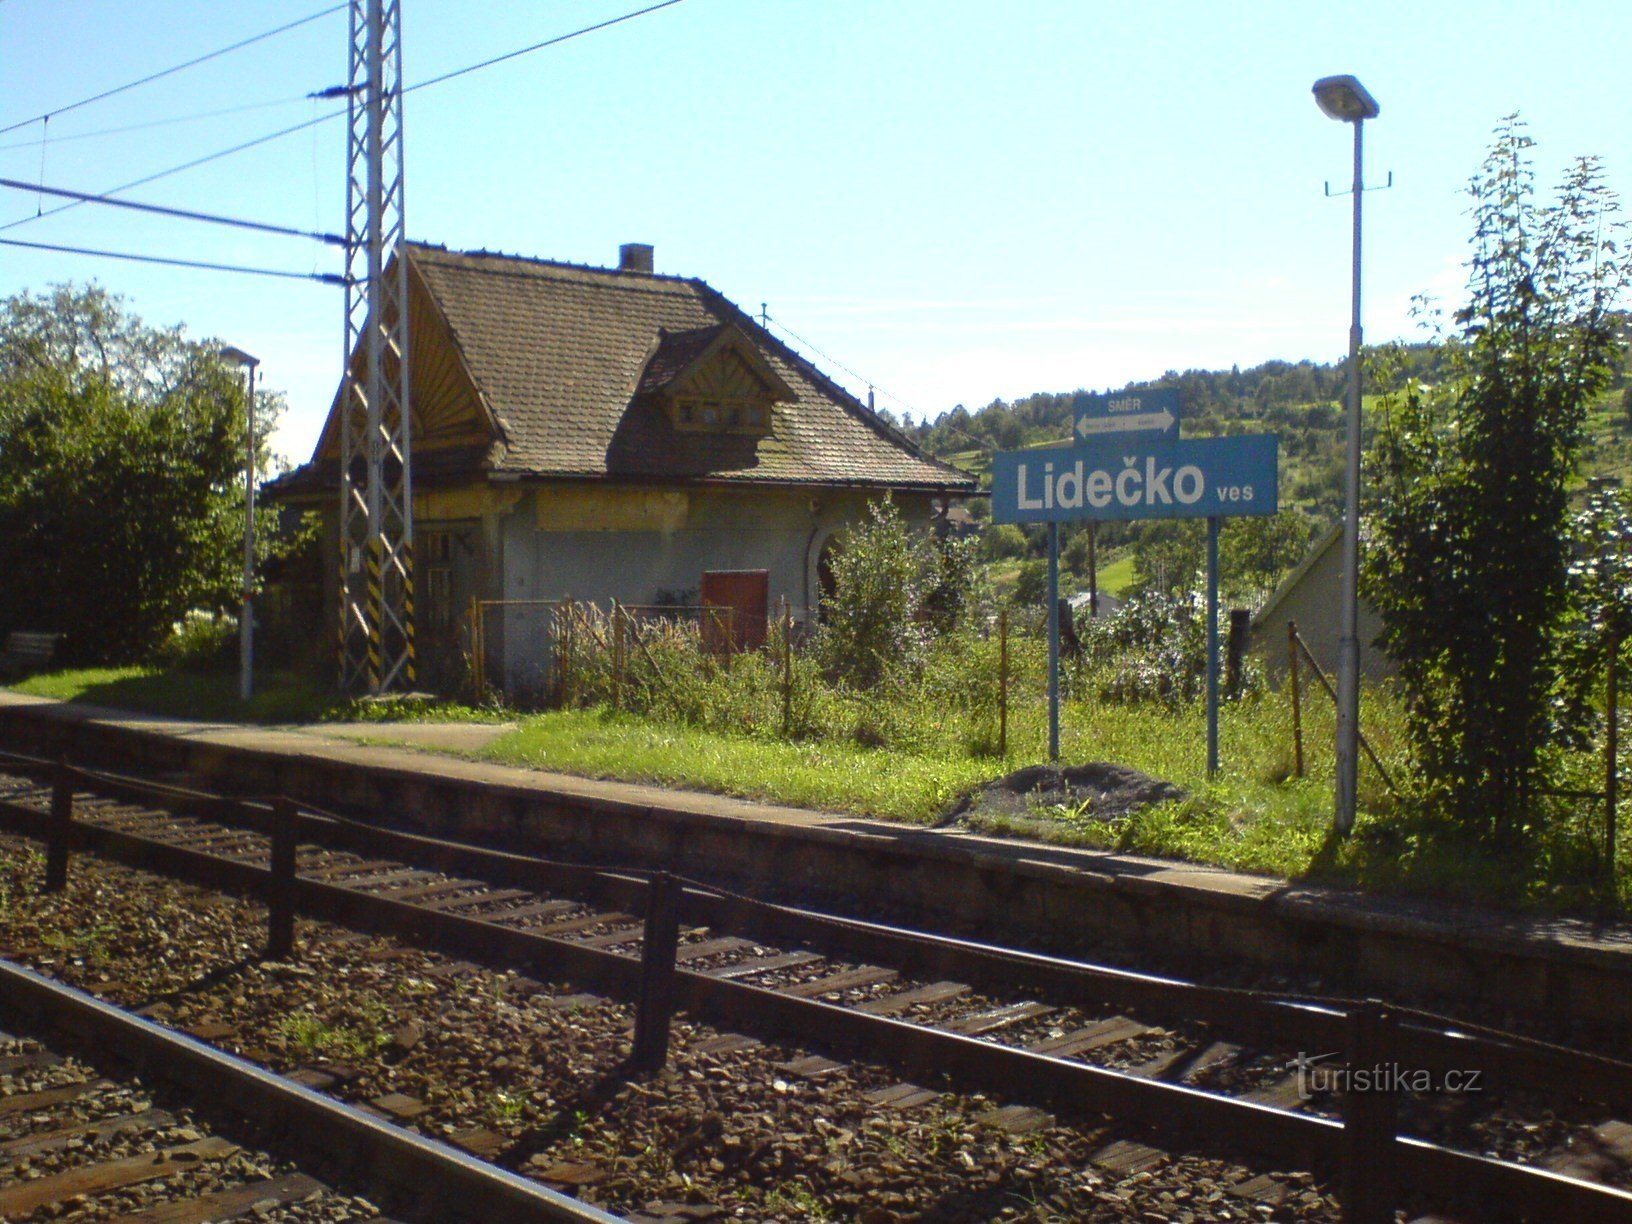 Villaggio Lidečko - stazione ferroviaria